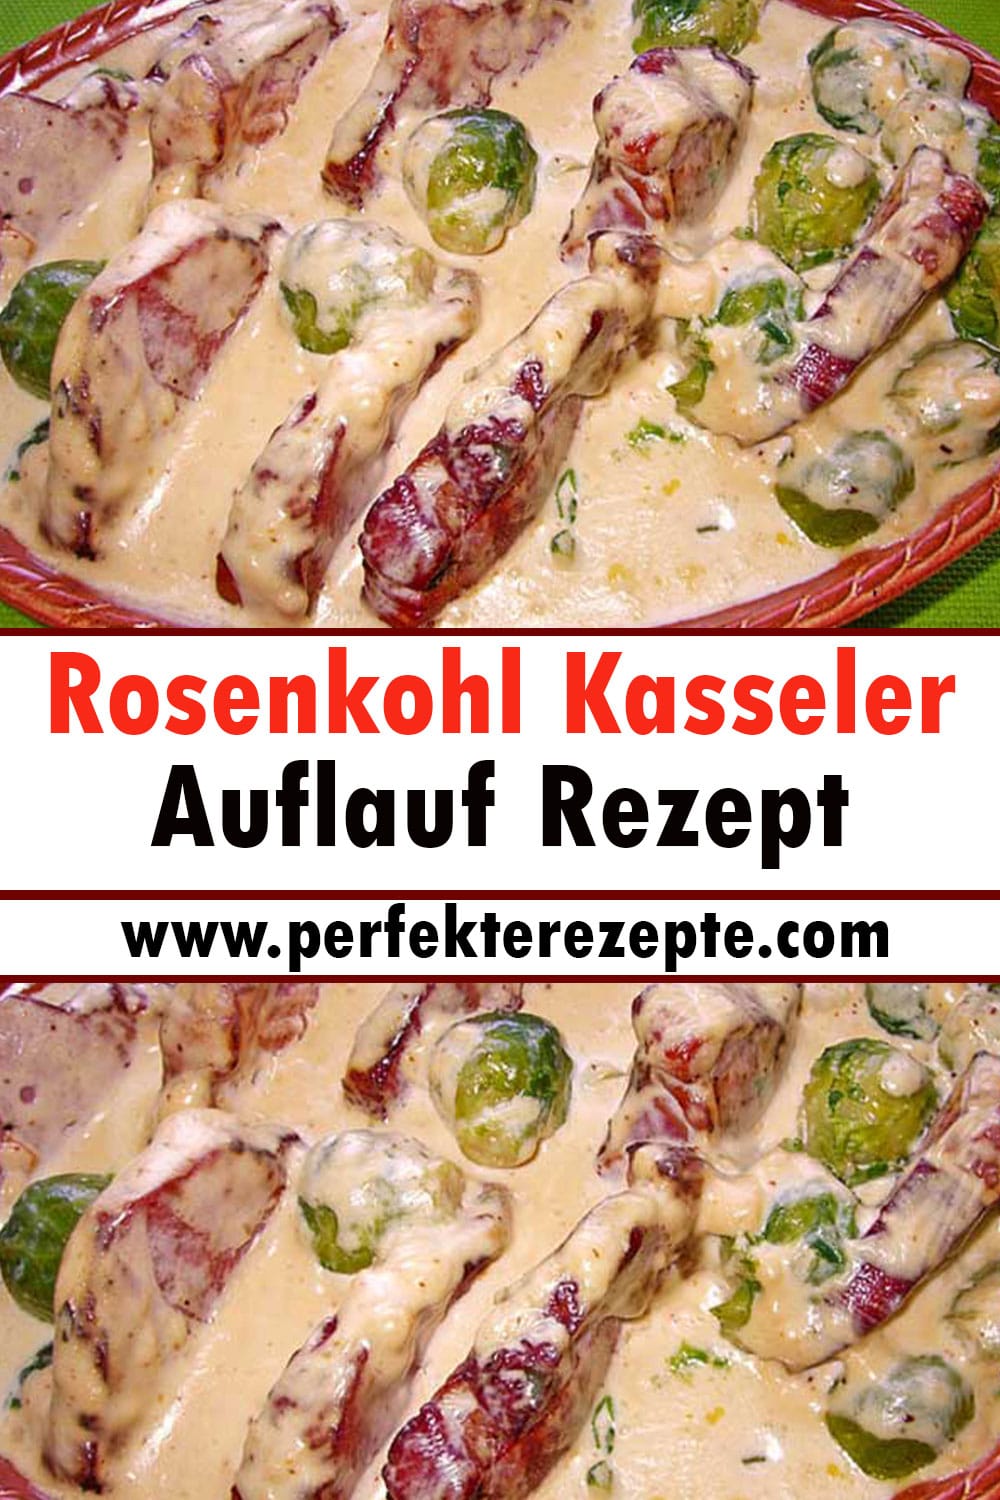 Rosenkohl Kasseler Auflauf Rezept